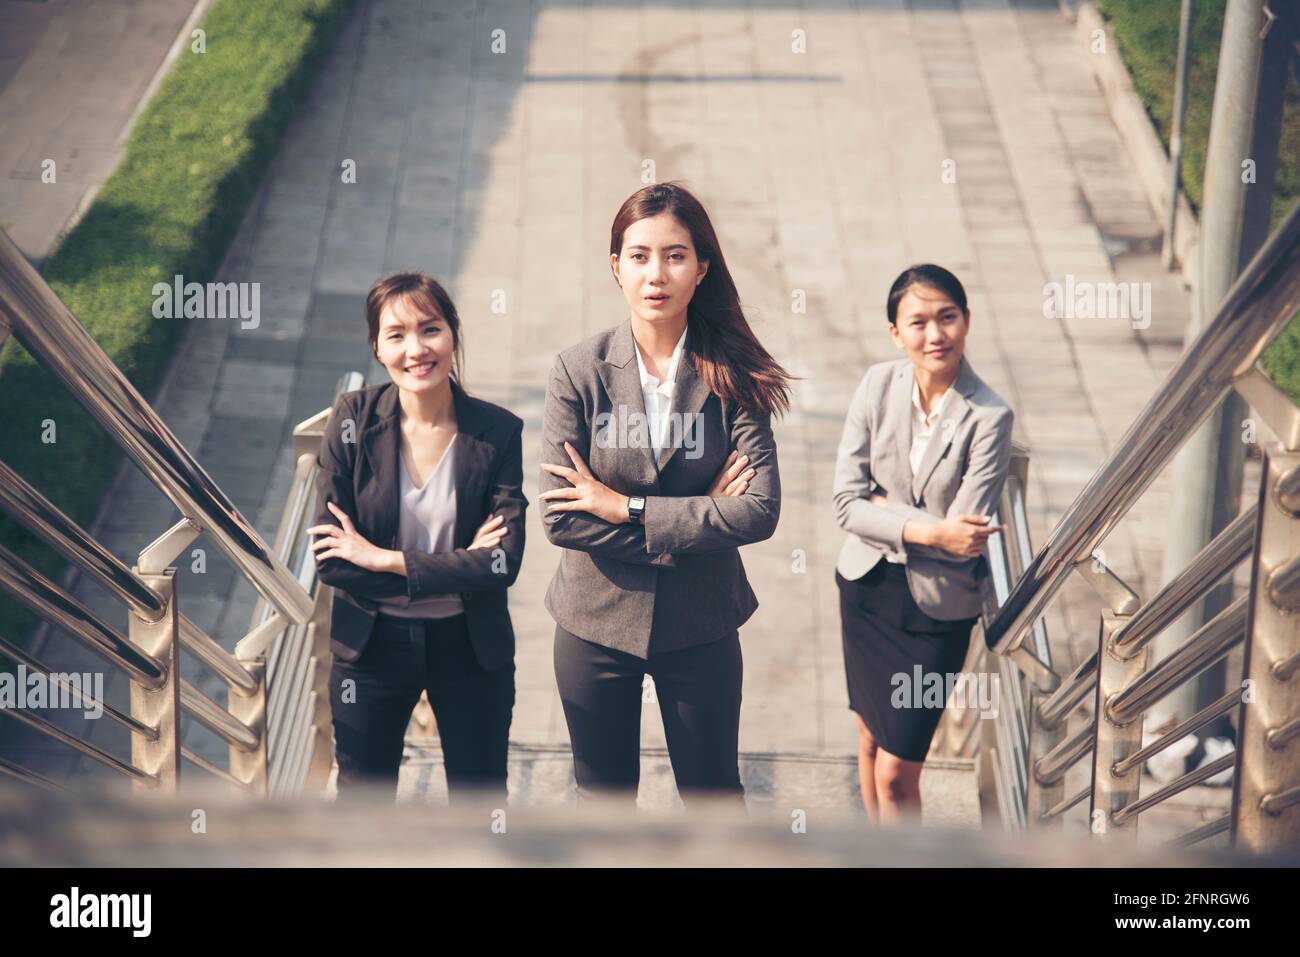 Power of Young Business Woman Leader Team arbeitet zusammen, um Geschäftsziel mit zuversichtlich und arbeiten vereint zu erreichen. Erfolg und Teamwork-Konzept. Stockfoto